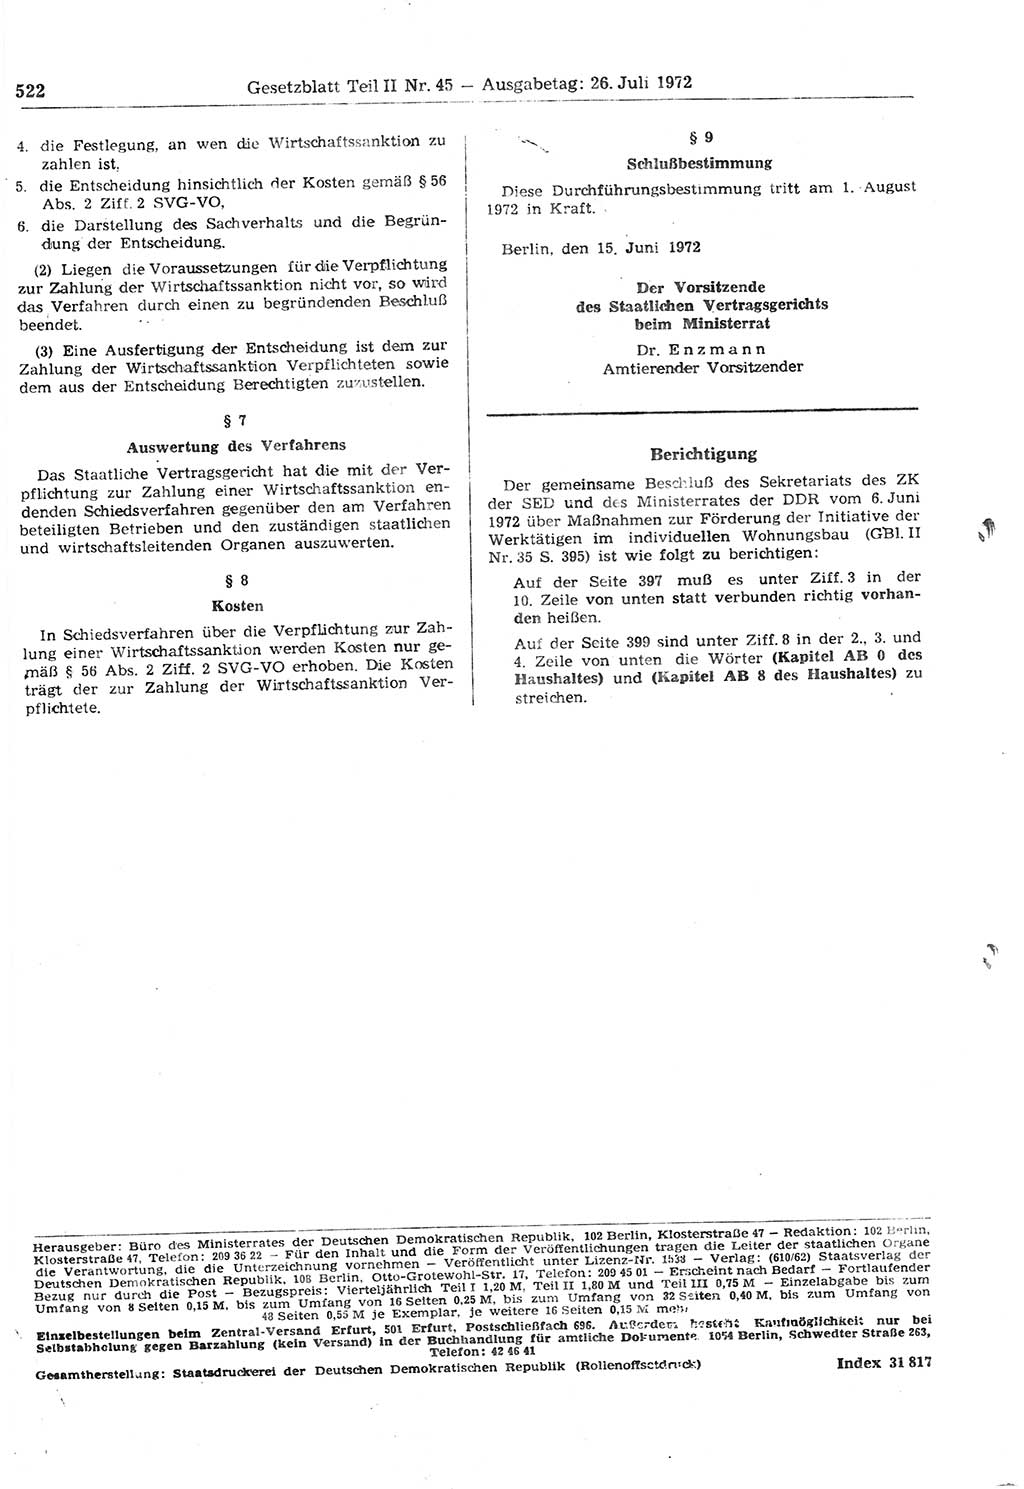 Gesetzblatt (GBl.) der Deutschen Demokratischen Republik (DDR) Teil ⅠⅠ 1972, Seite 522 (GBl. DDR ⅠⅠ 1972, S. 522)